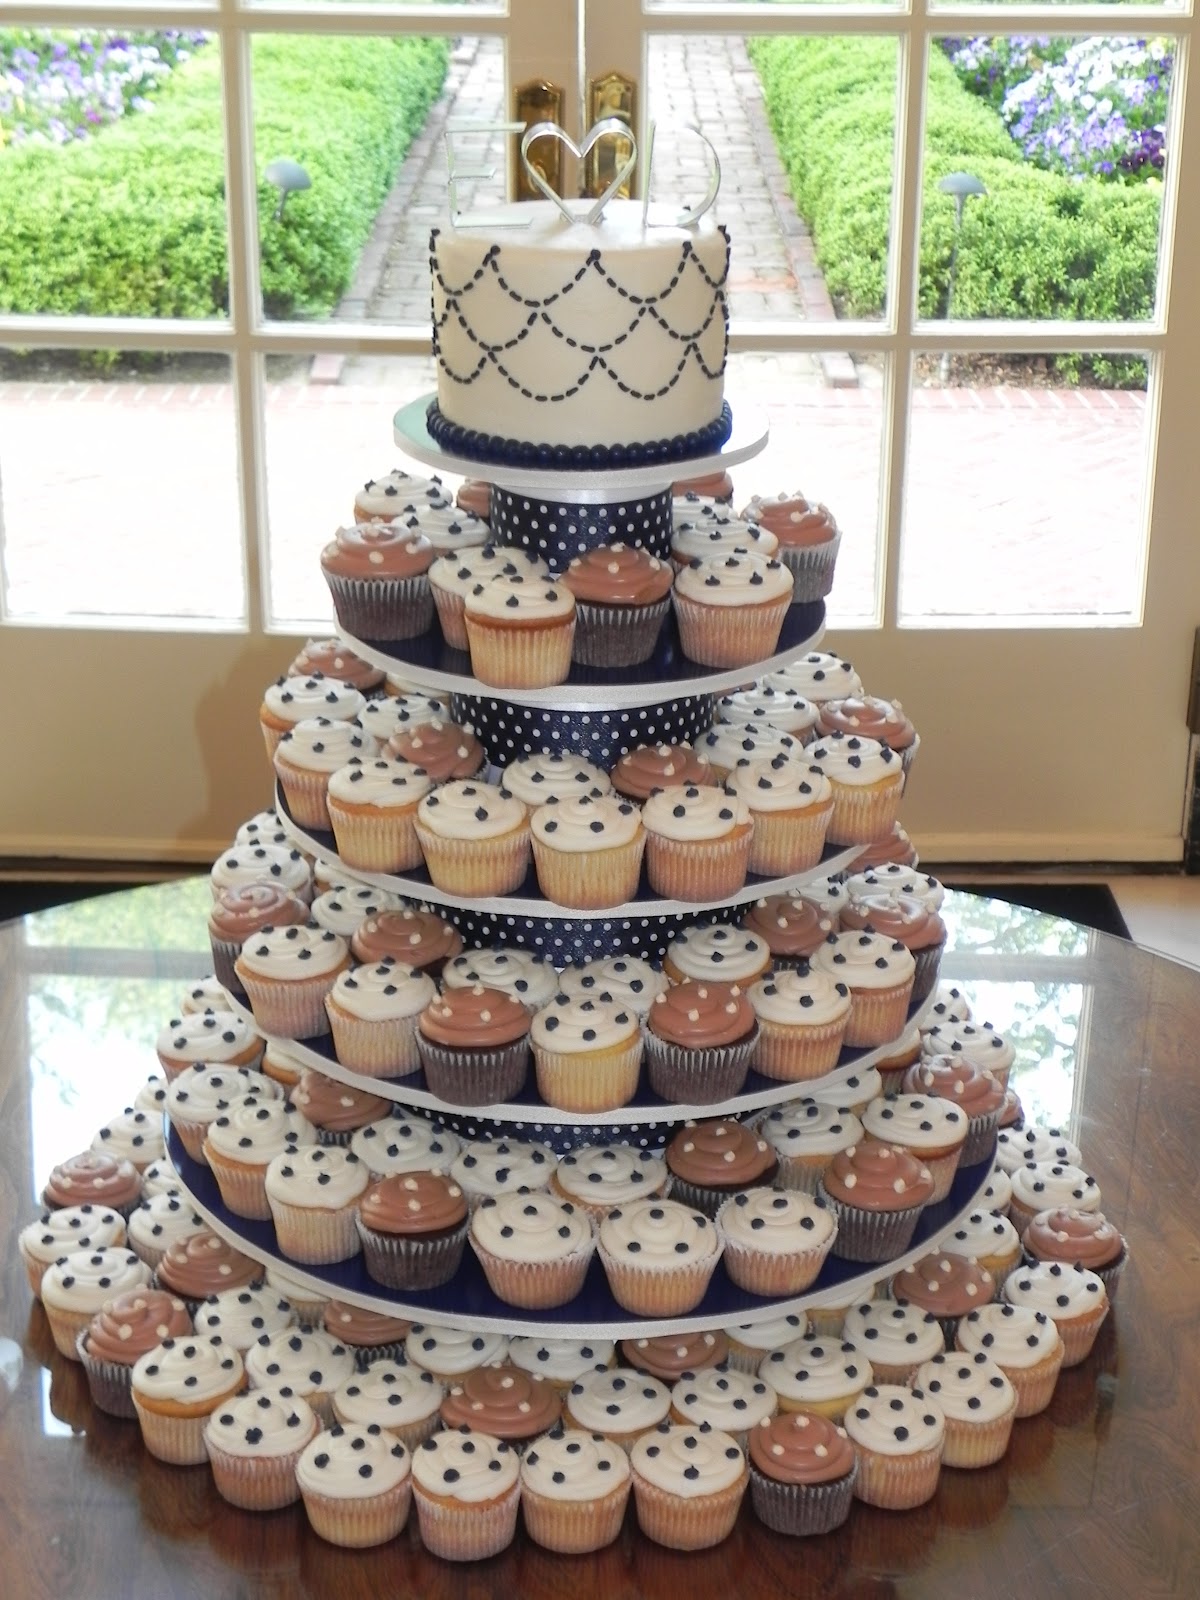 Cupcake Wedding Cakes - We Need Fun